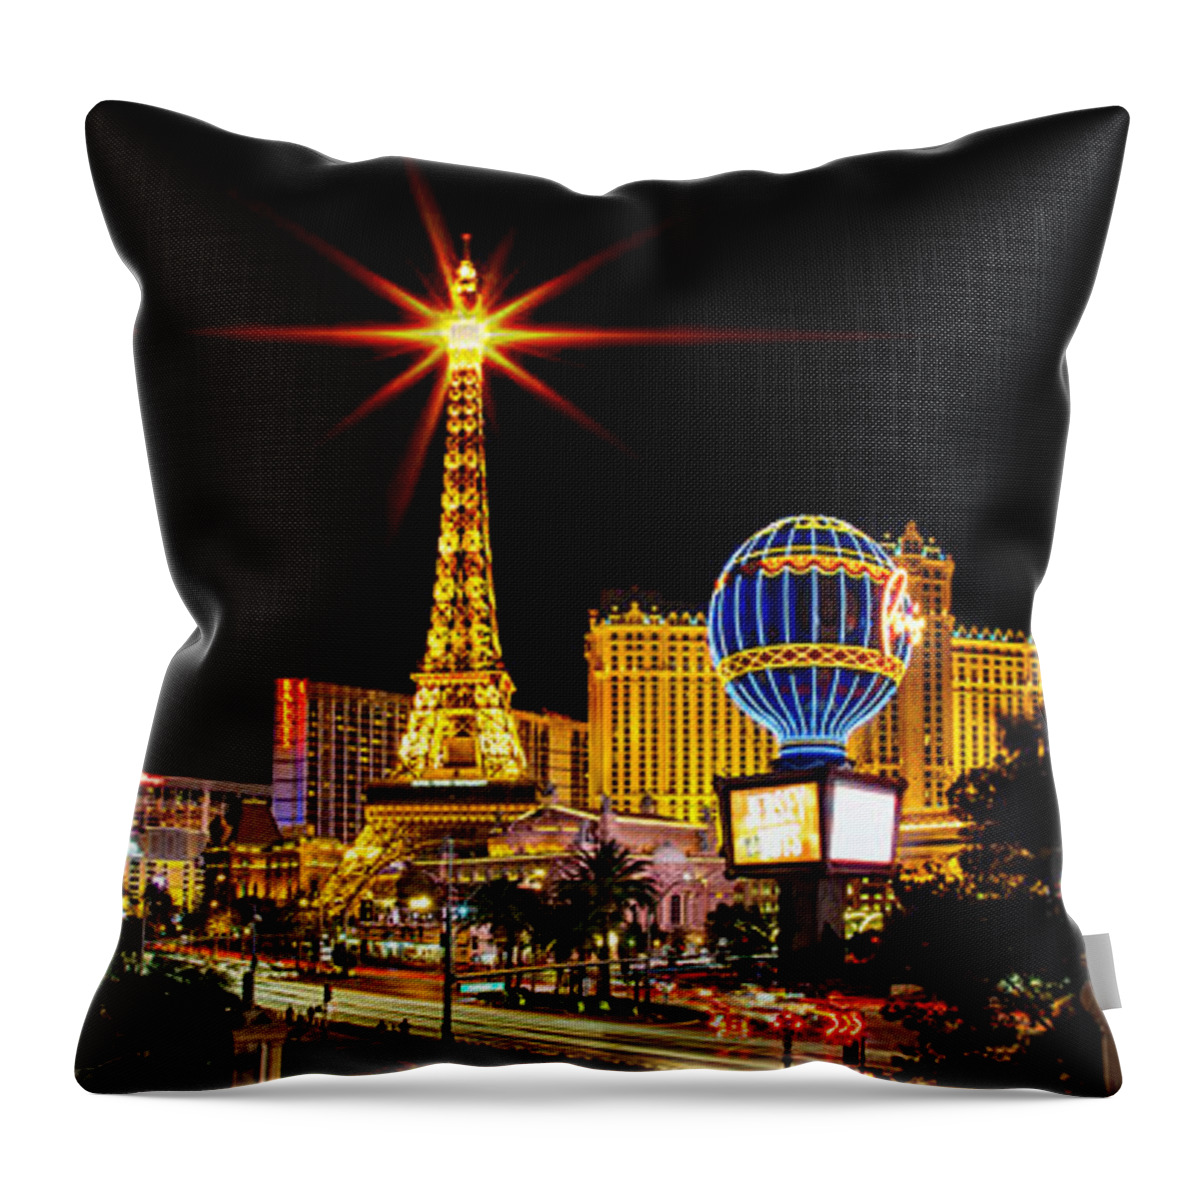 Las Vegas Throw Pillow featuring the photograph Lighting Up Vegas by Az Jackson